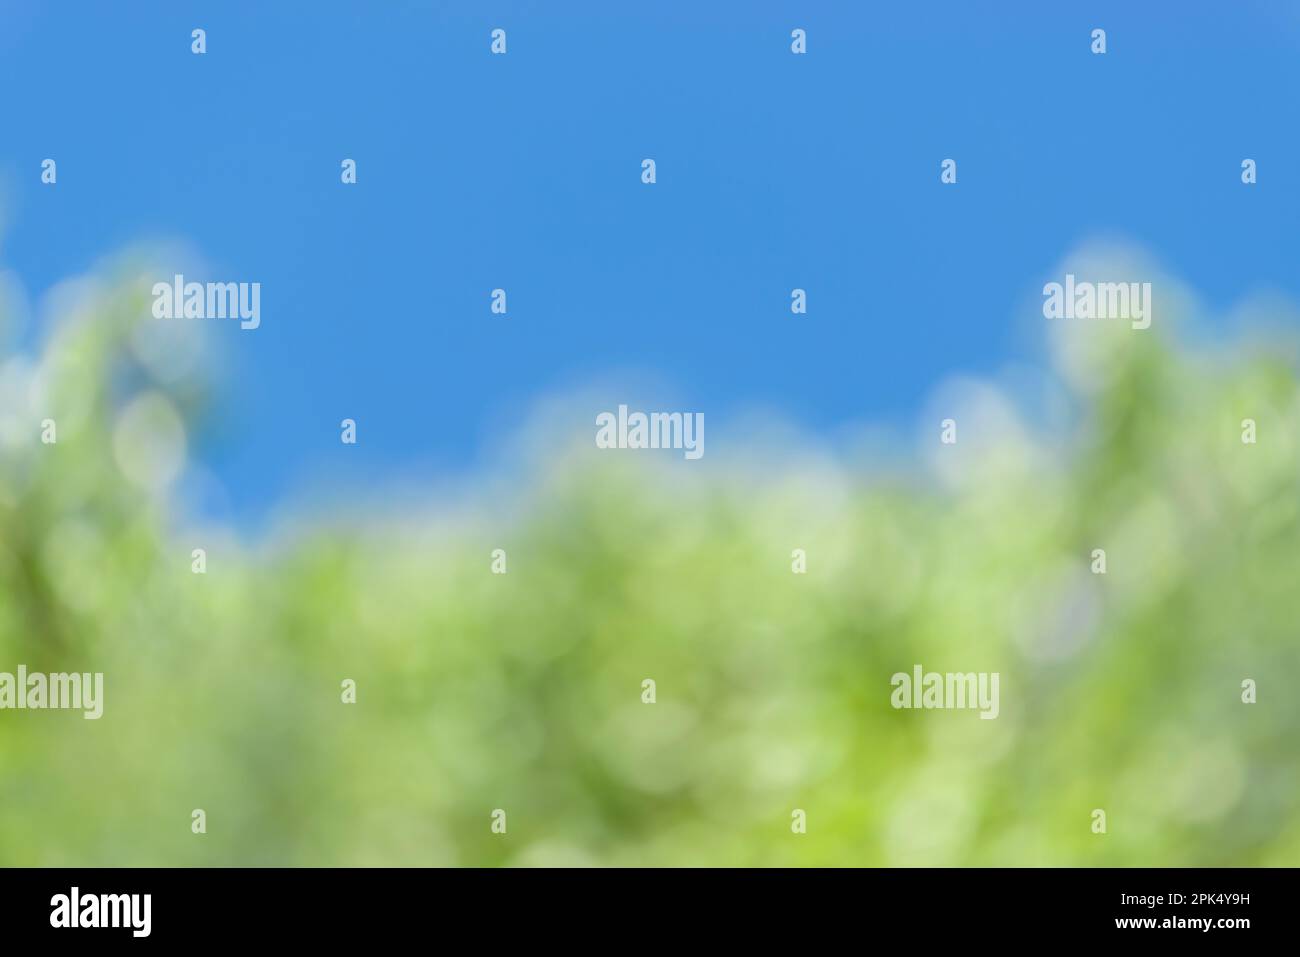 Horizontale Aufnahme und unscharfer blauer und grüner Frühlingshintergrund. Stockfoto